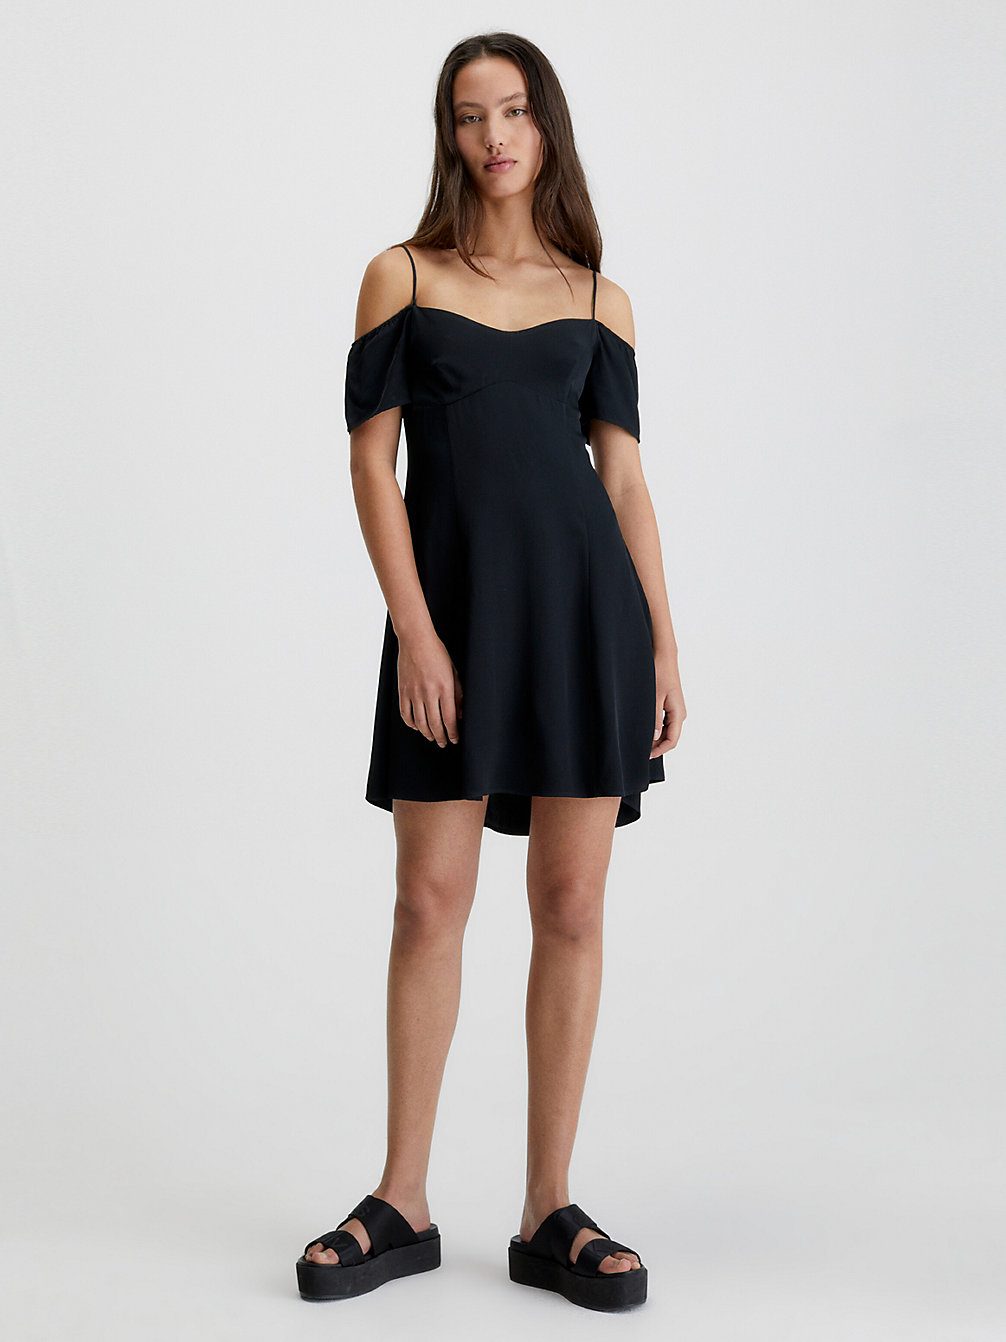 CK BLACK > Sukienka Mini Z Krepy Z Odsłoniętymi Ramionami > undefined Kobiety - Calvin Klein